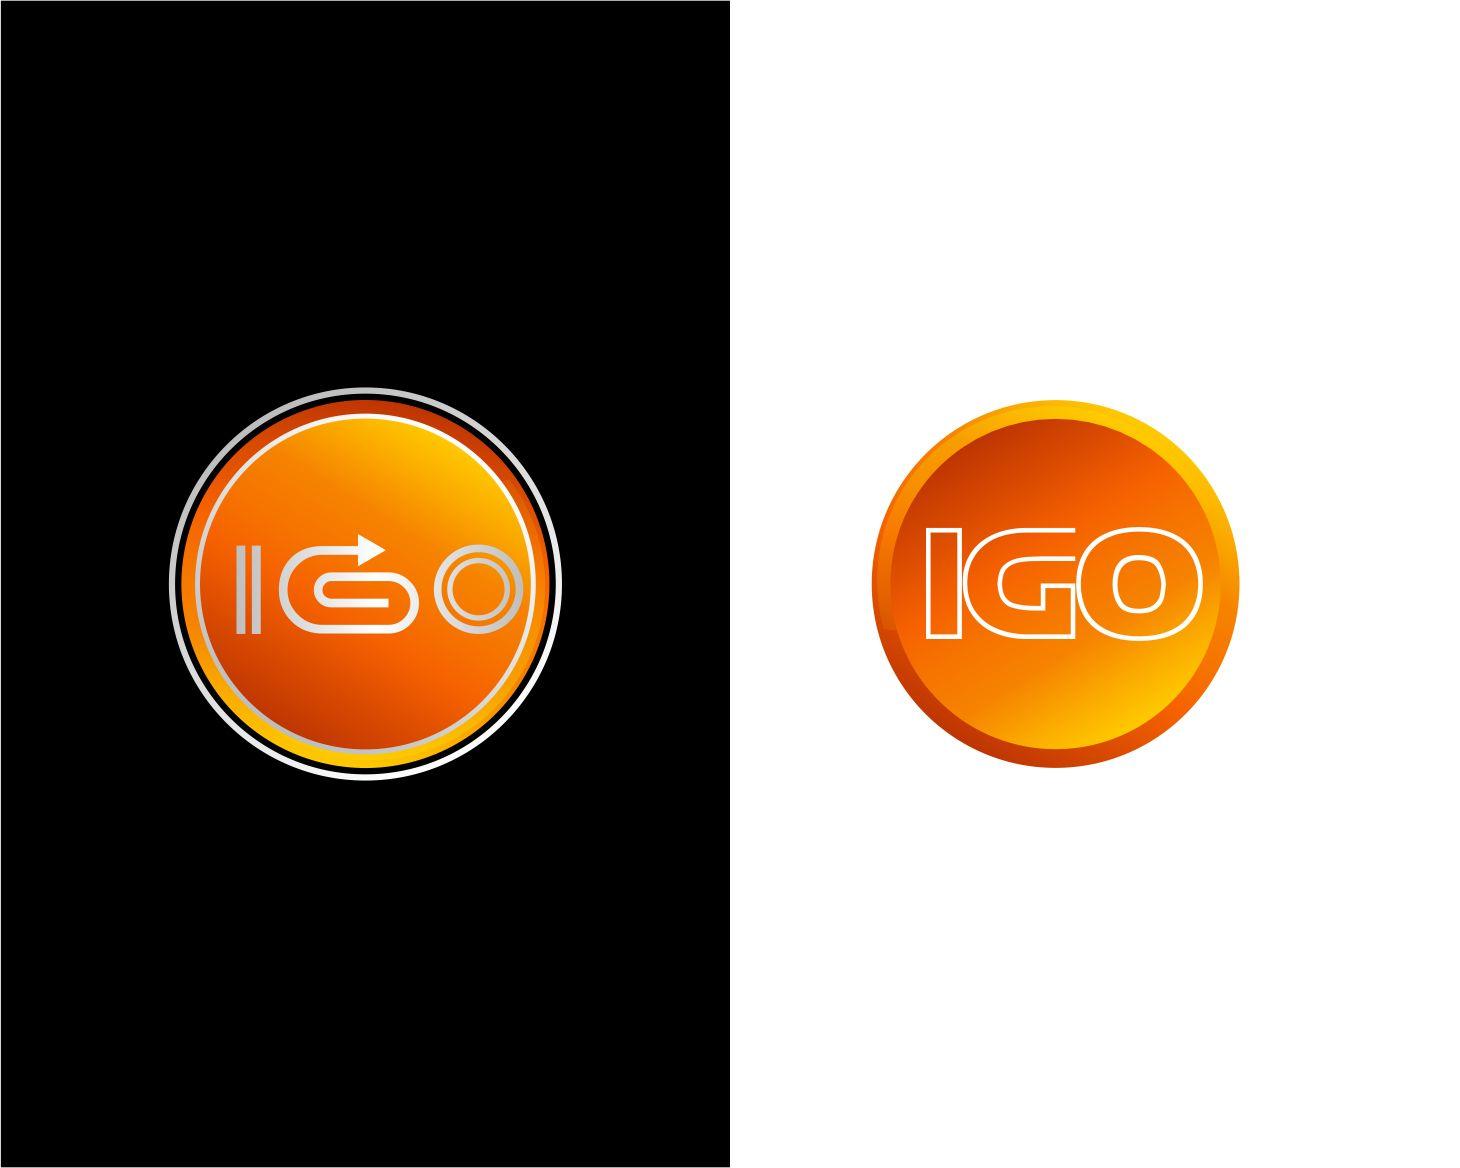 Igo Logo - Logo Design Contest for iGo | Hatchwise